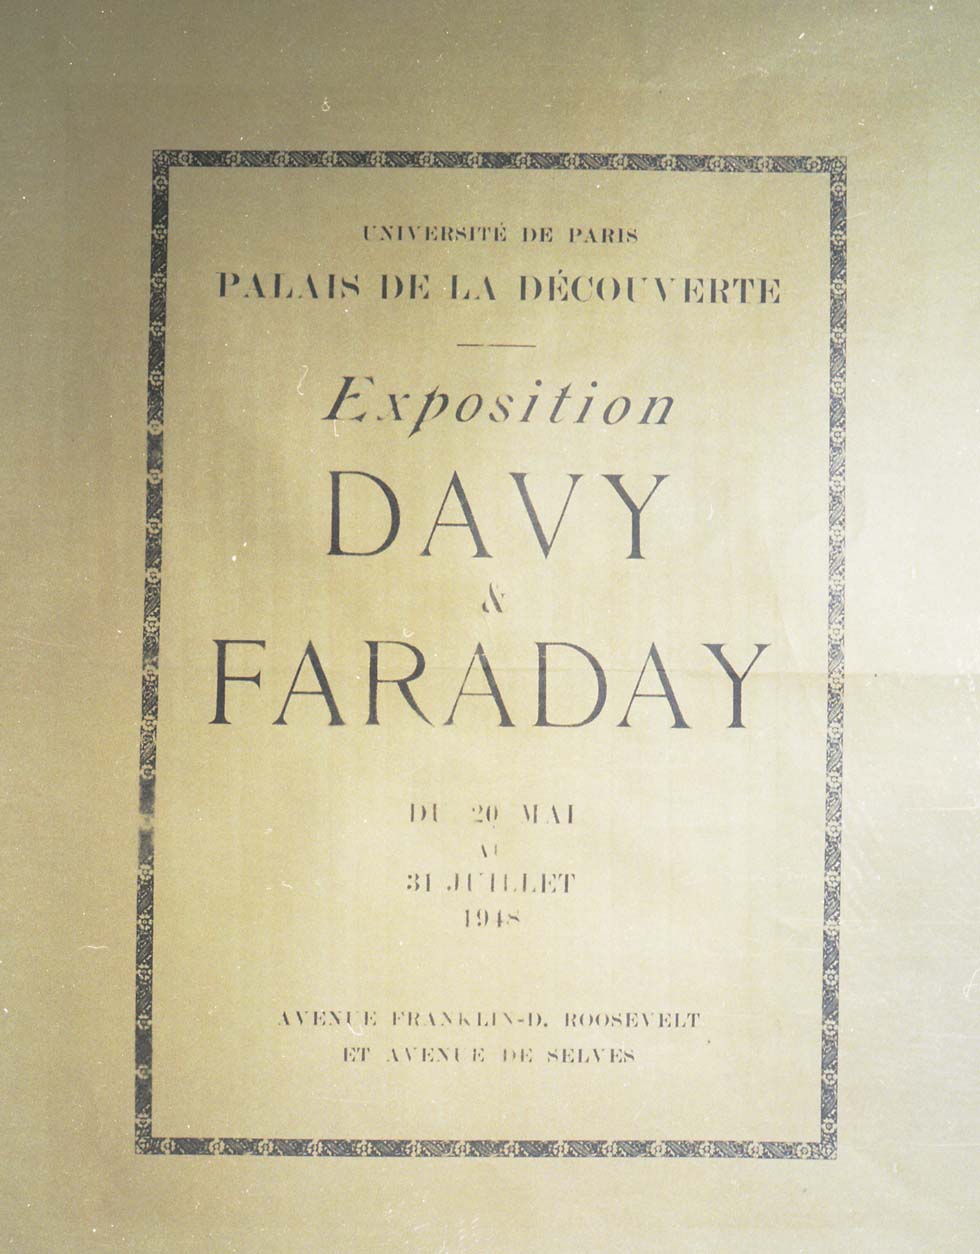 1948 : Davy et Faraday(ouverture du diaporama)